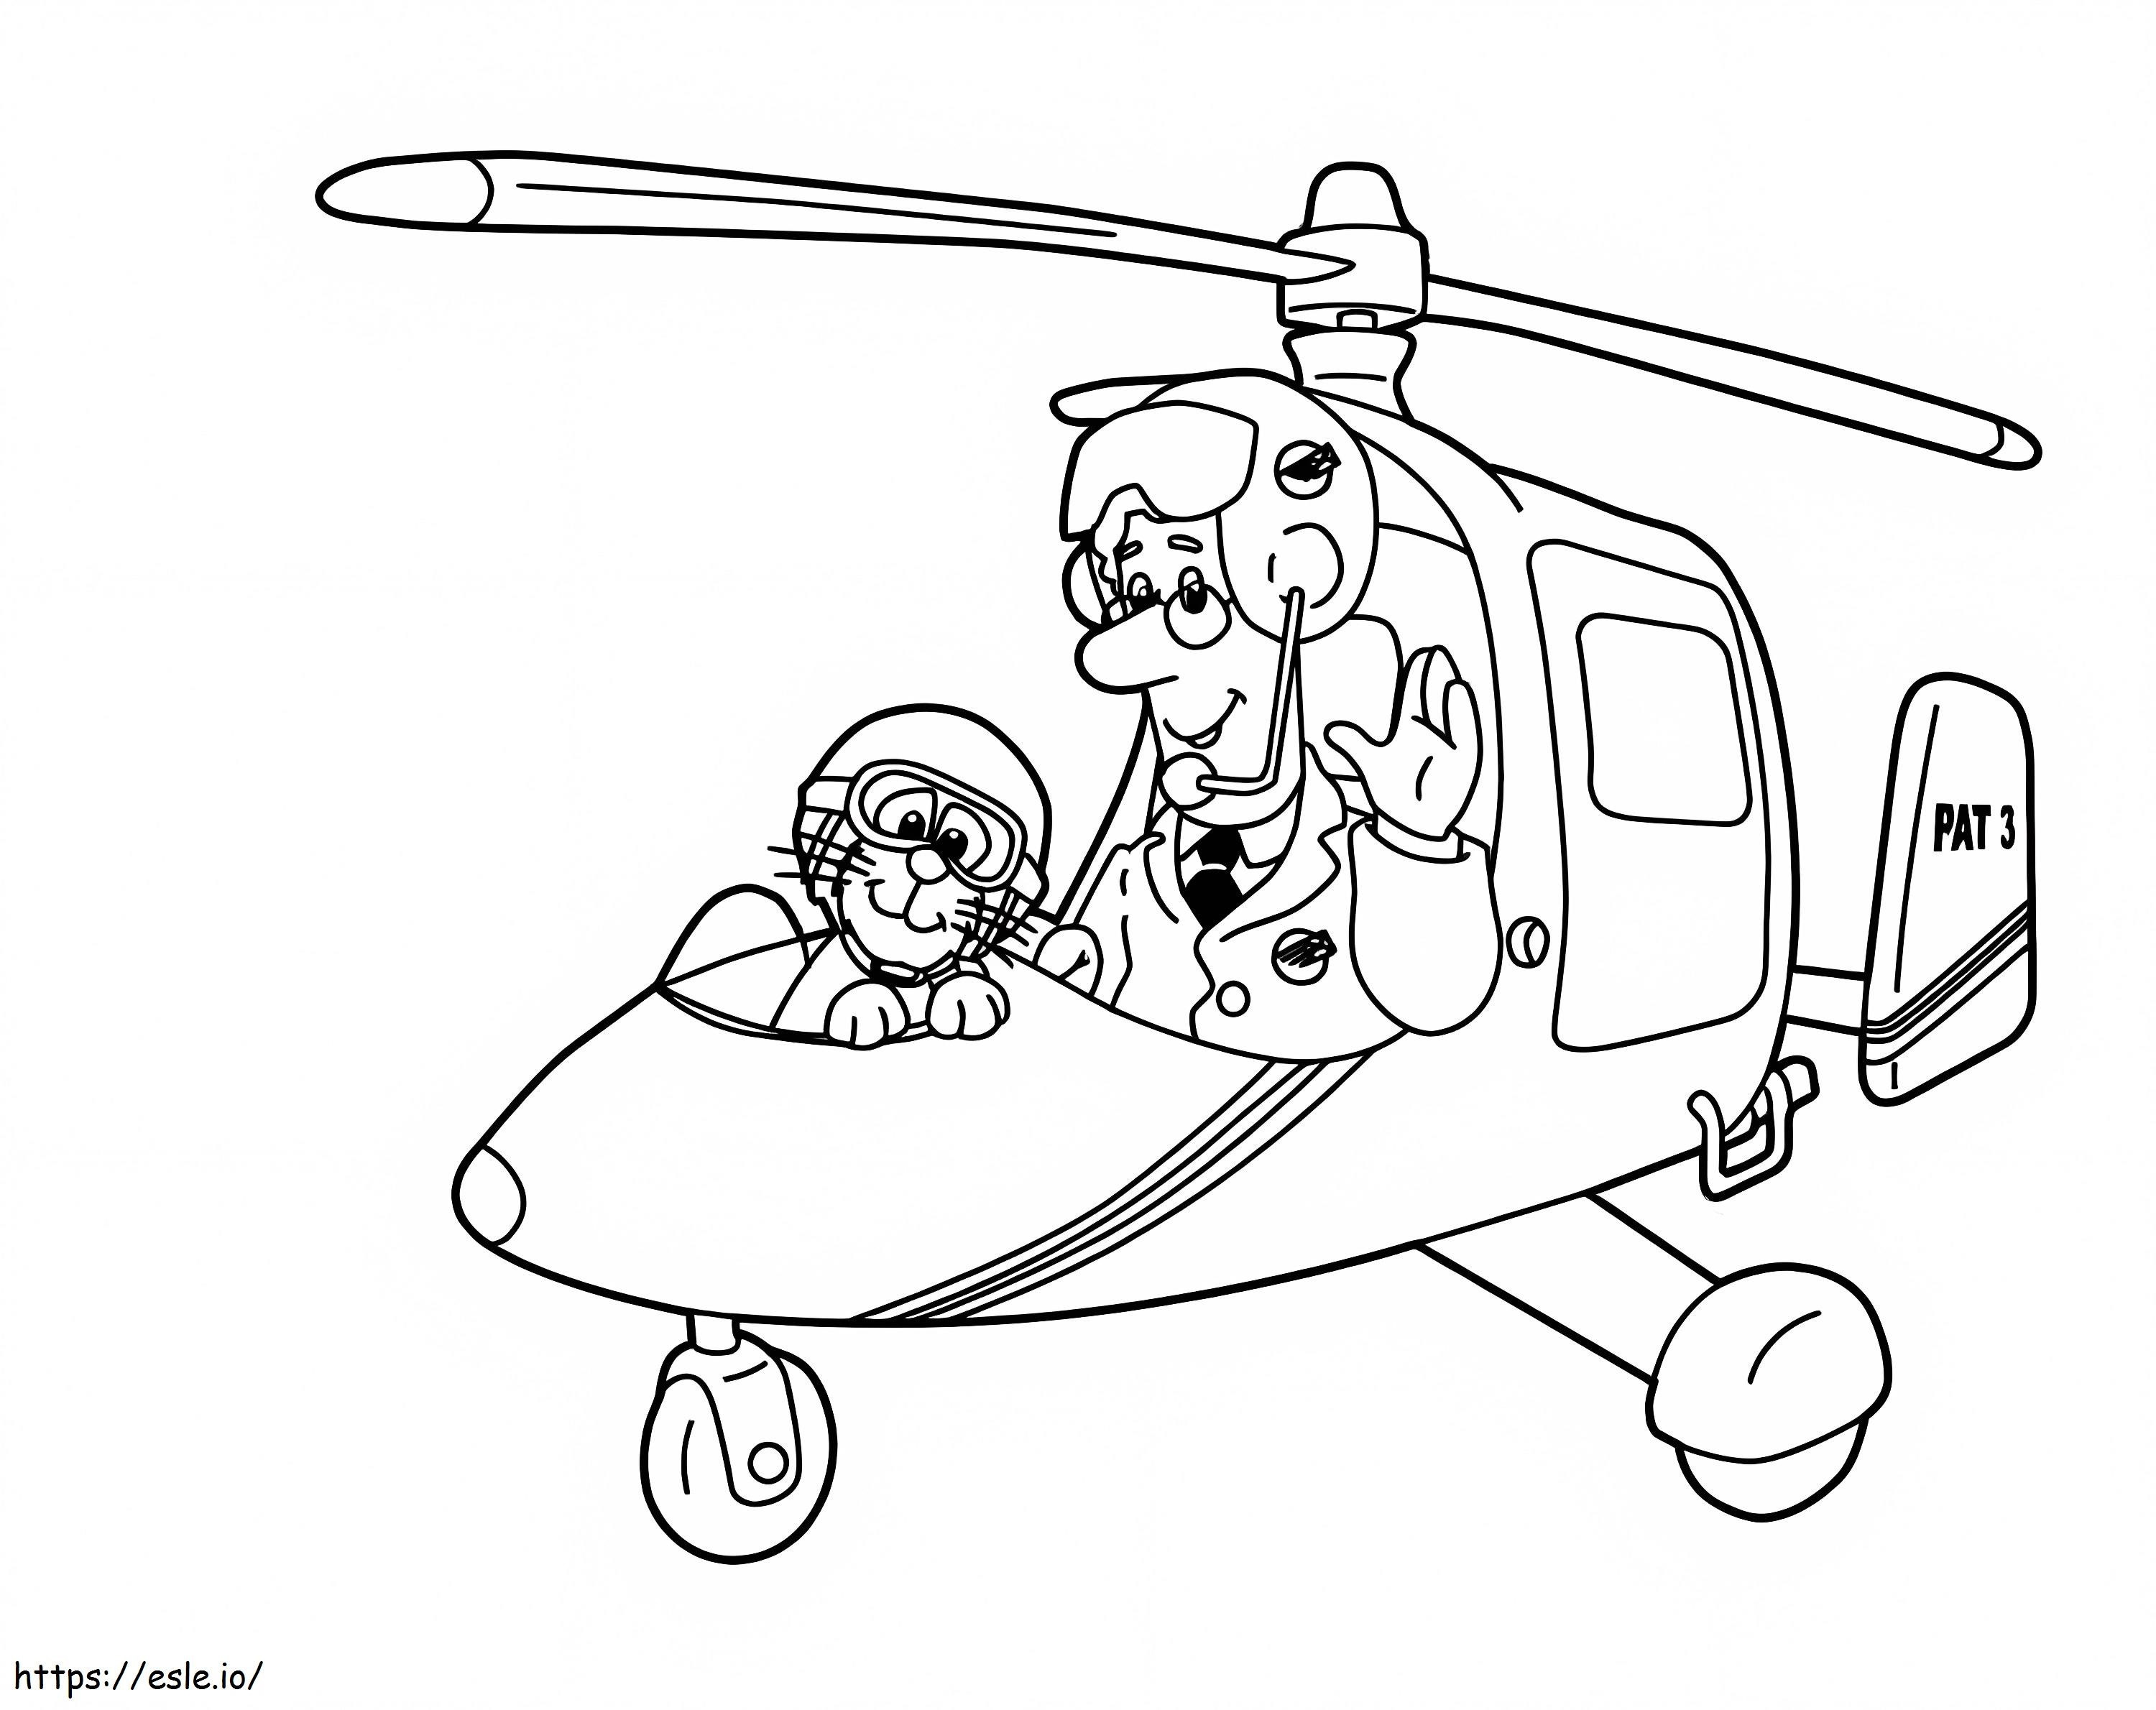 Postman Pat Dan Kucingnya Di Helikopter Gambar Mewarnai